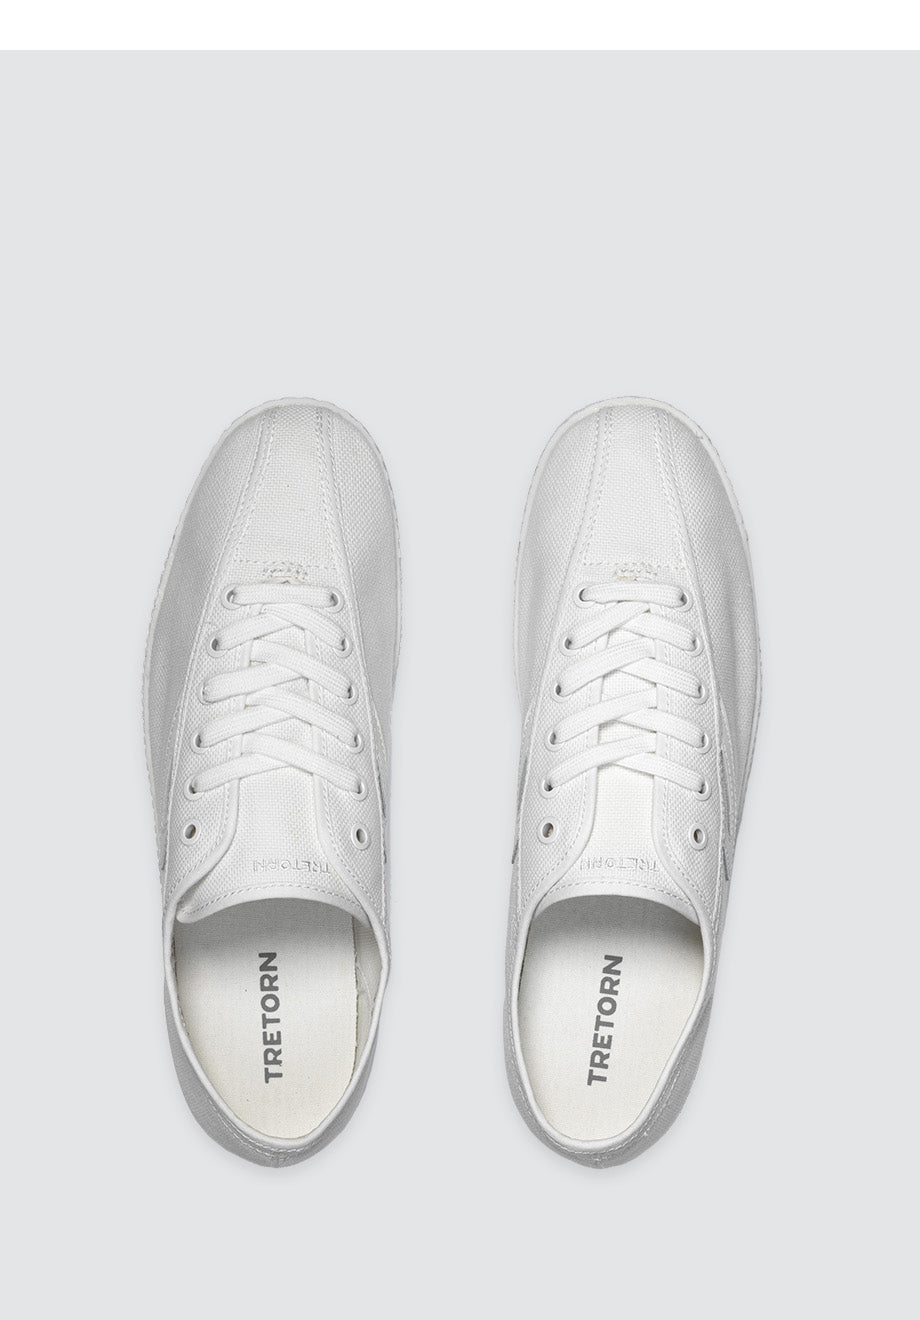 Nylite Canvas Sneaker White on White